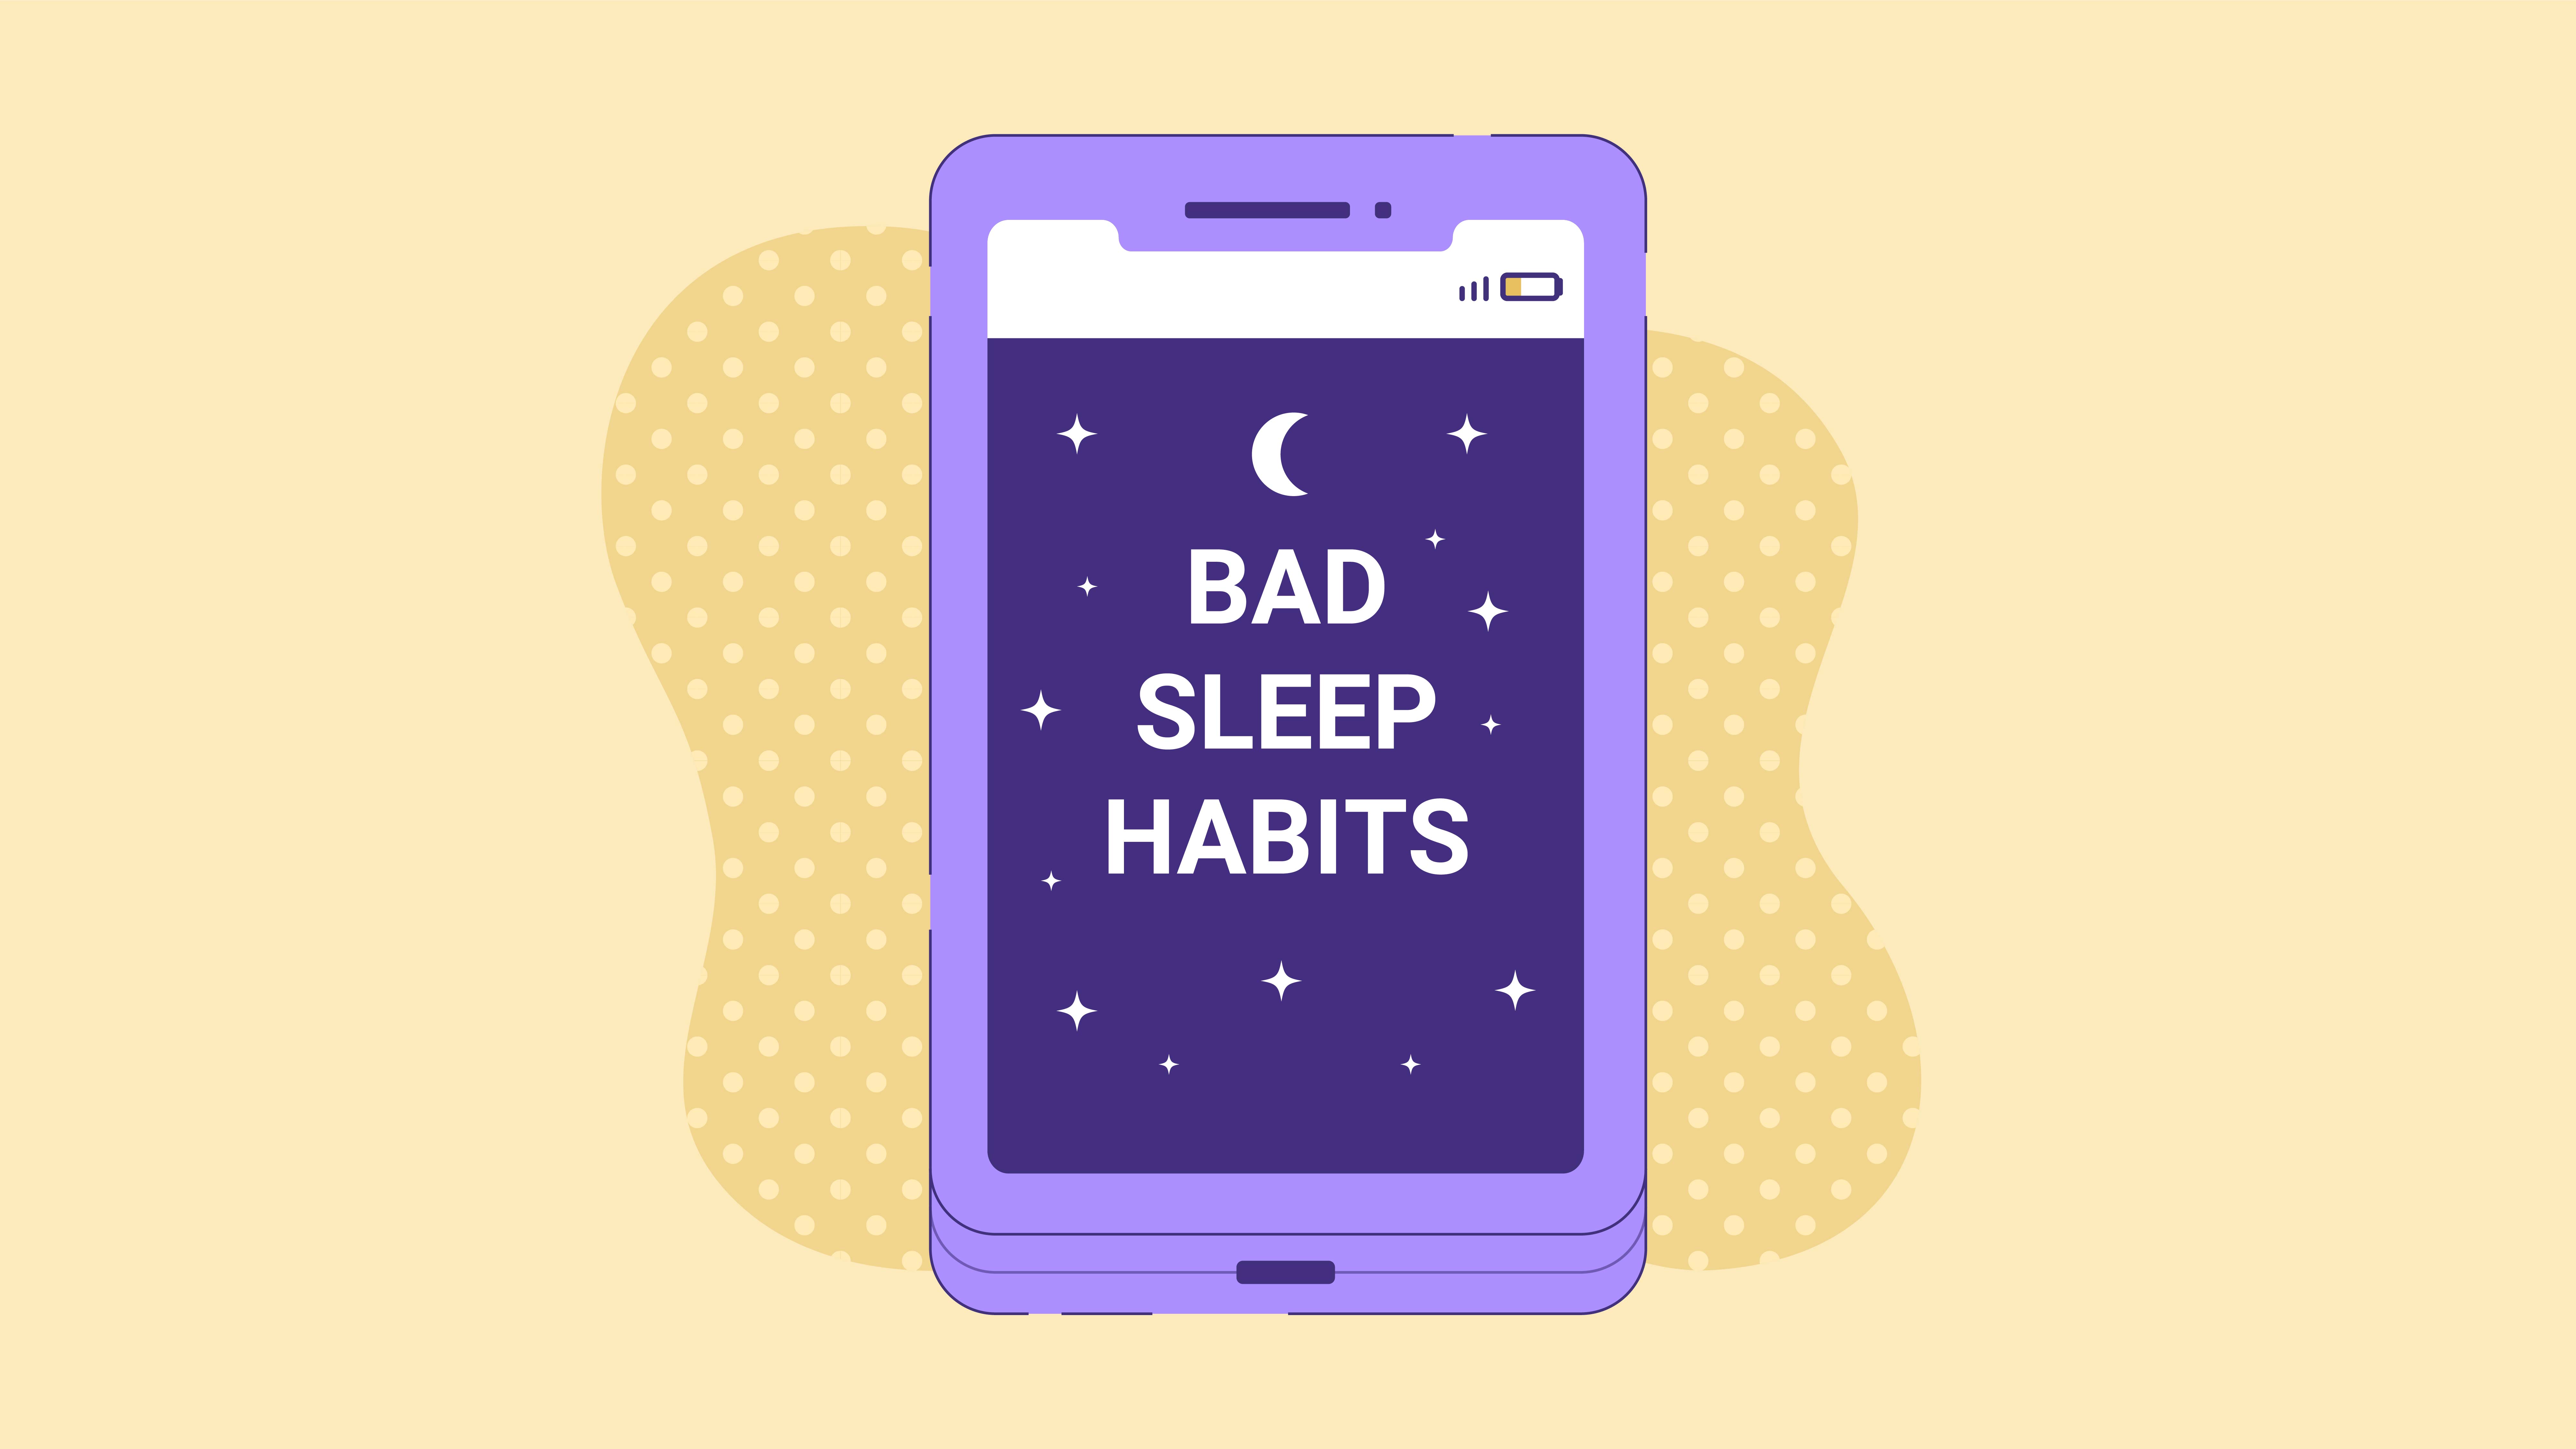 Sleep habits